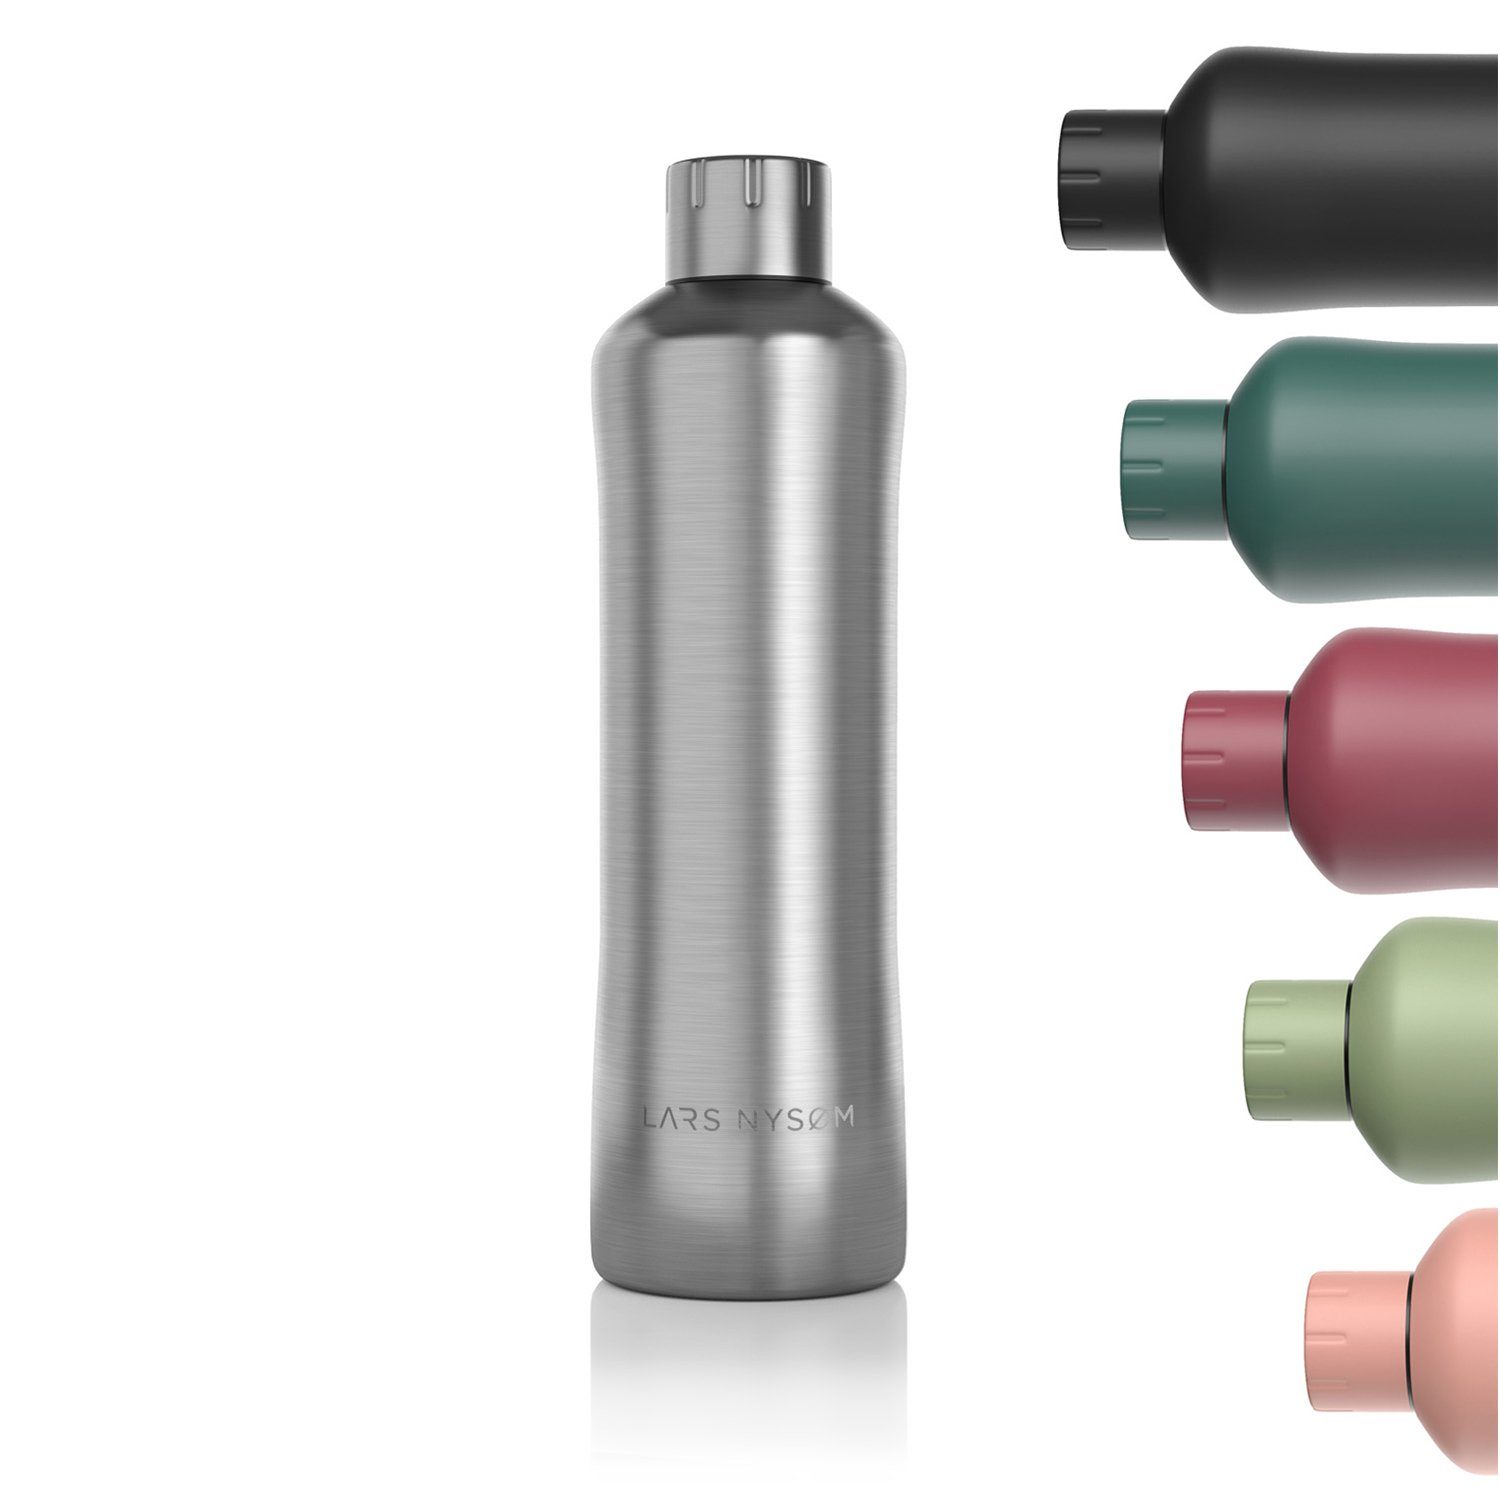 Bølge, Isolierflasche Kohlensäure BPA-Freie Stainless Thermosflasche geeignet NYSØM Steel LARS